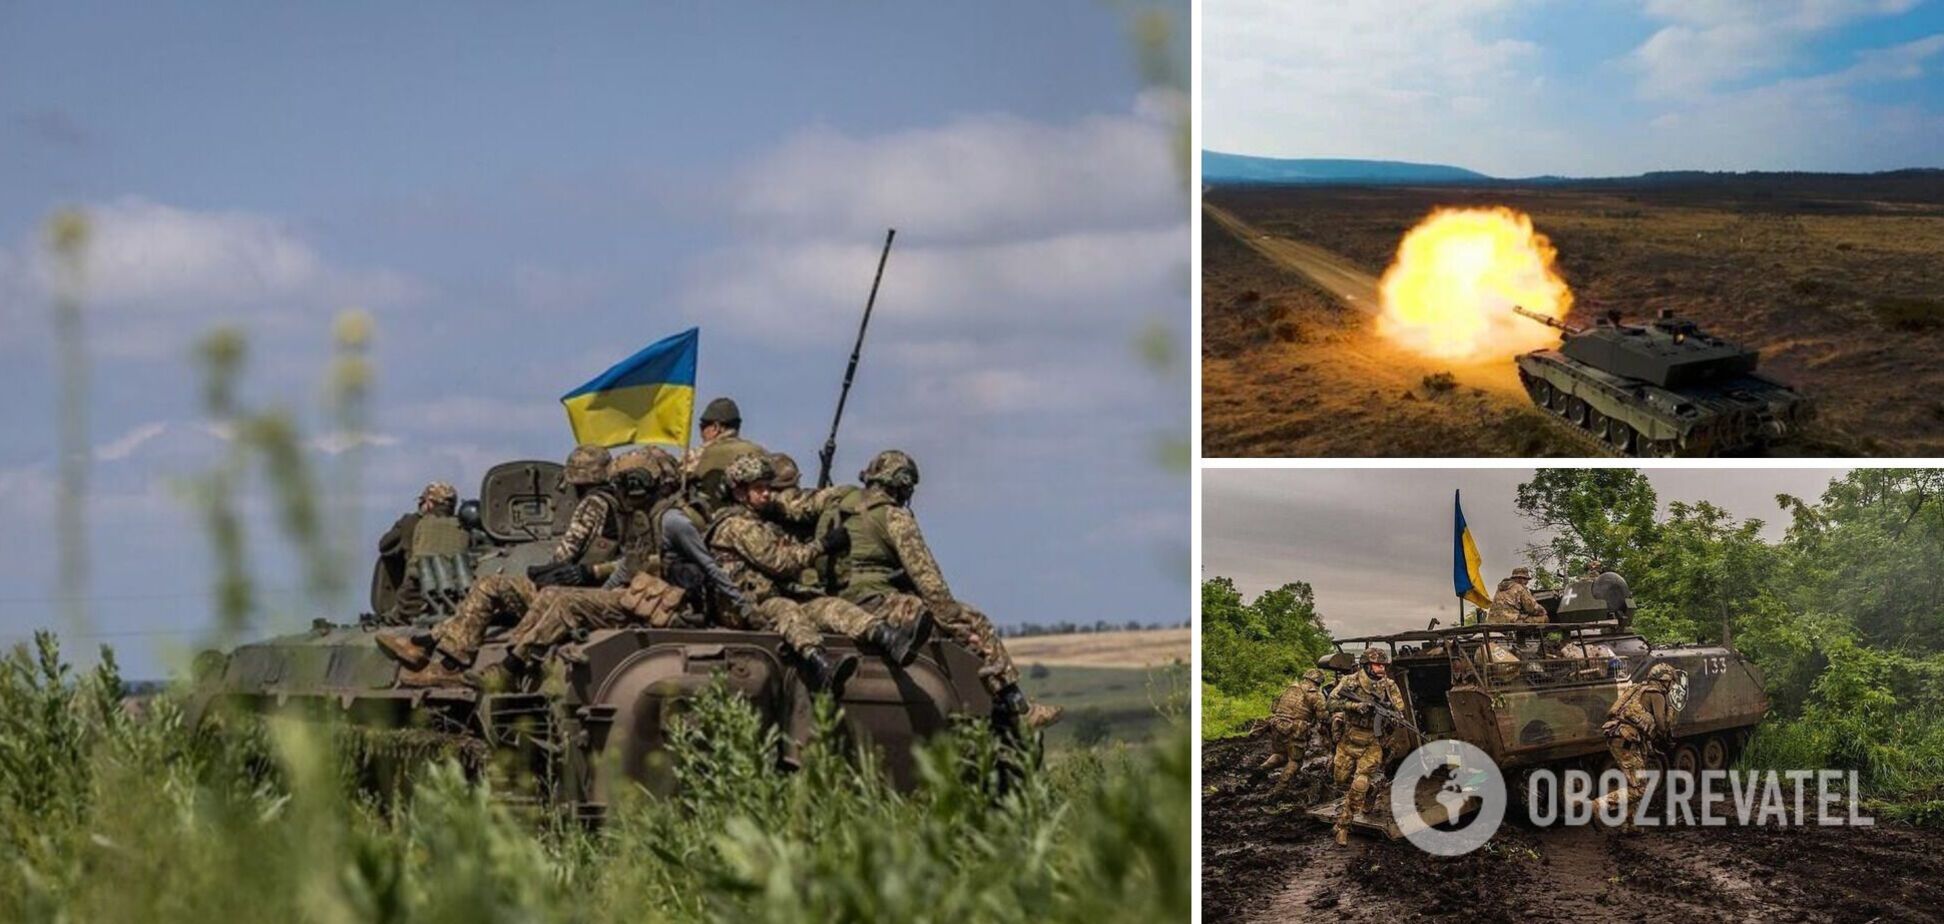 Звільнення півдня України: командування РФ у паніці затикає дірки в обороні масовою загибеллю своїх солдатів, а українські воїни йдуть на рекорд